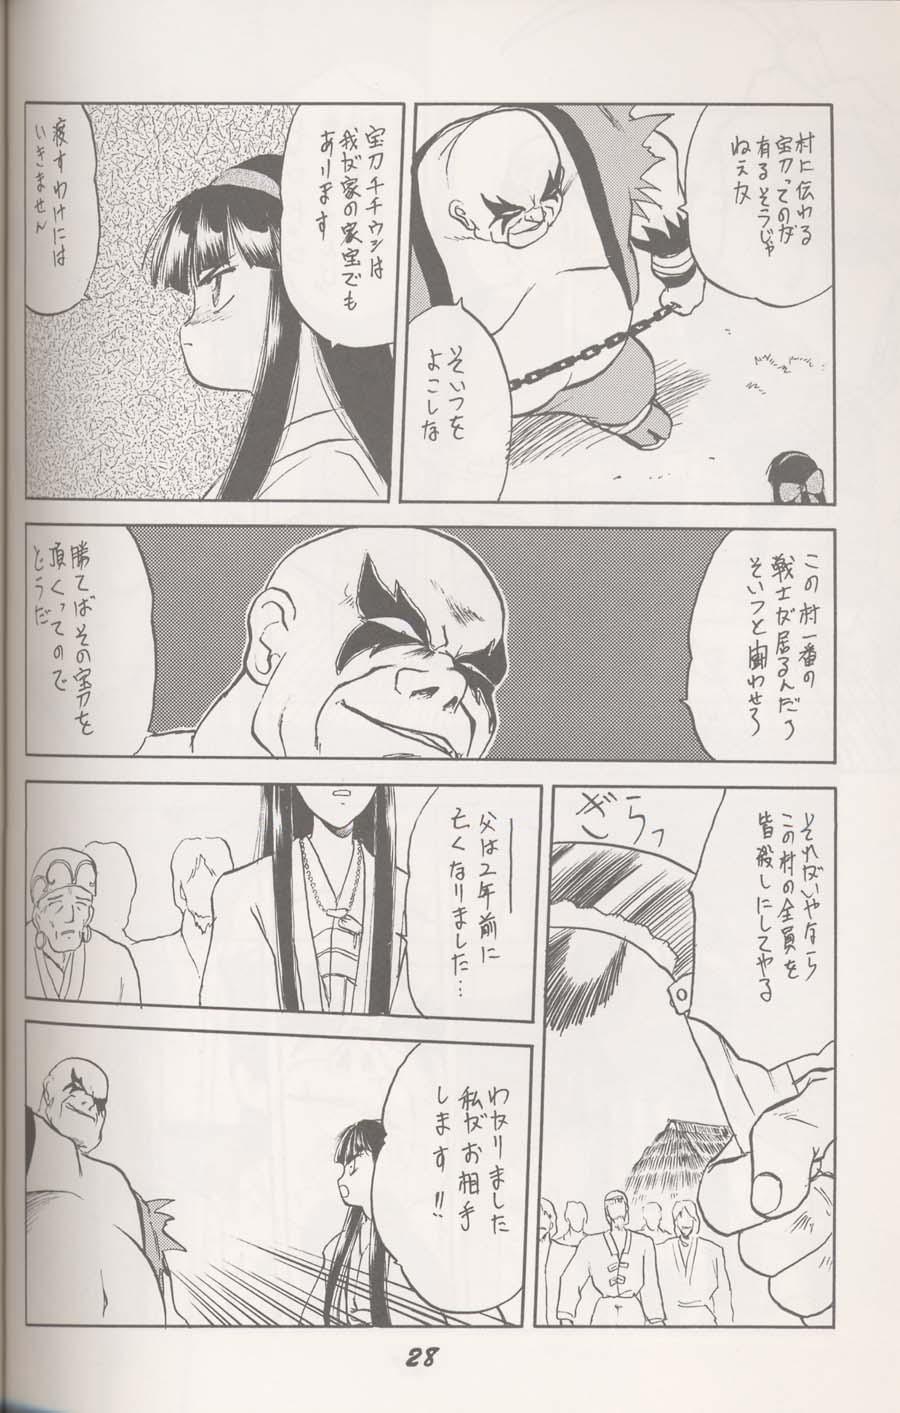 Shaven ヌプル メノコ ナコルル - Samurai spirits Clothed - Page 3